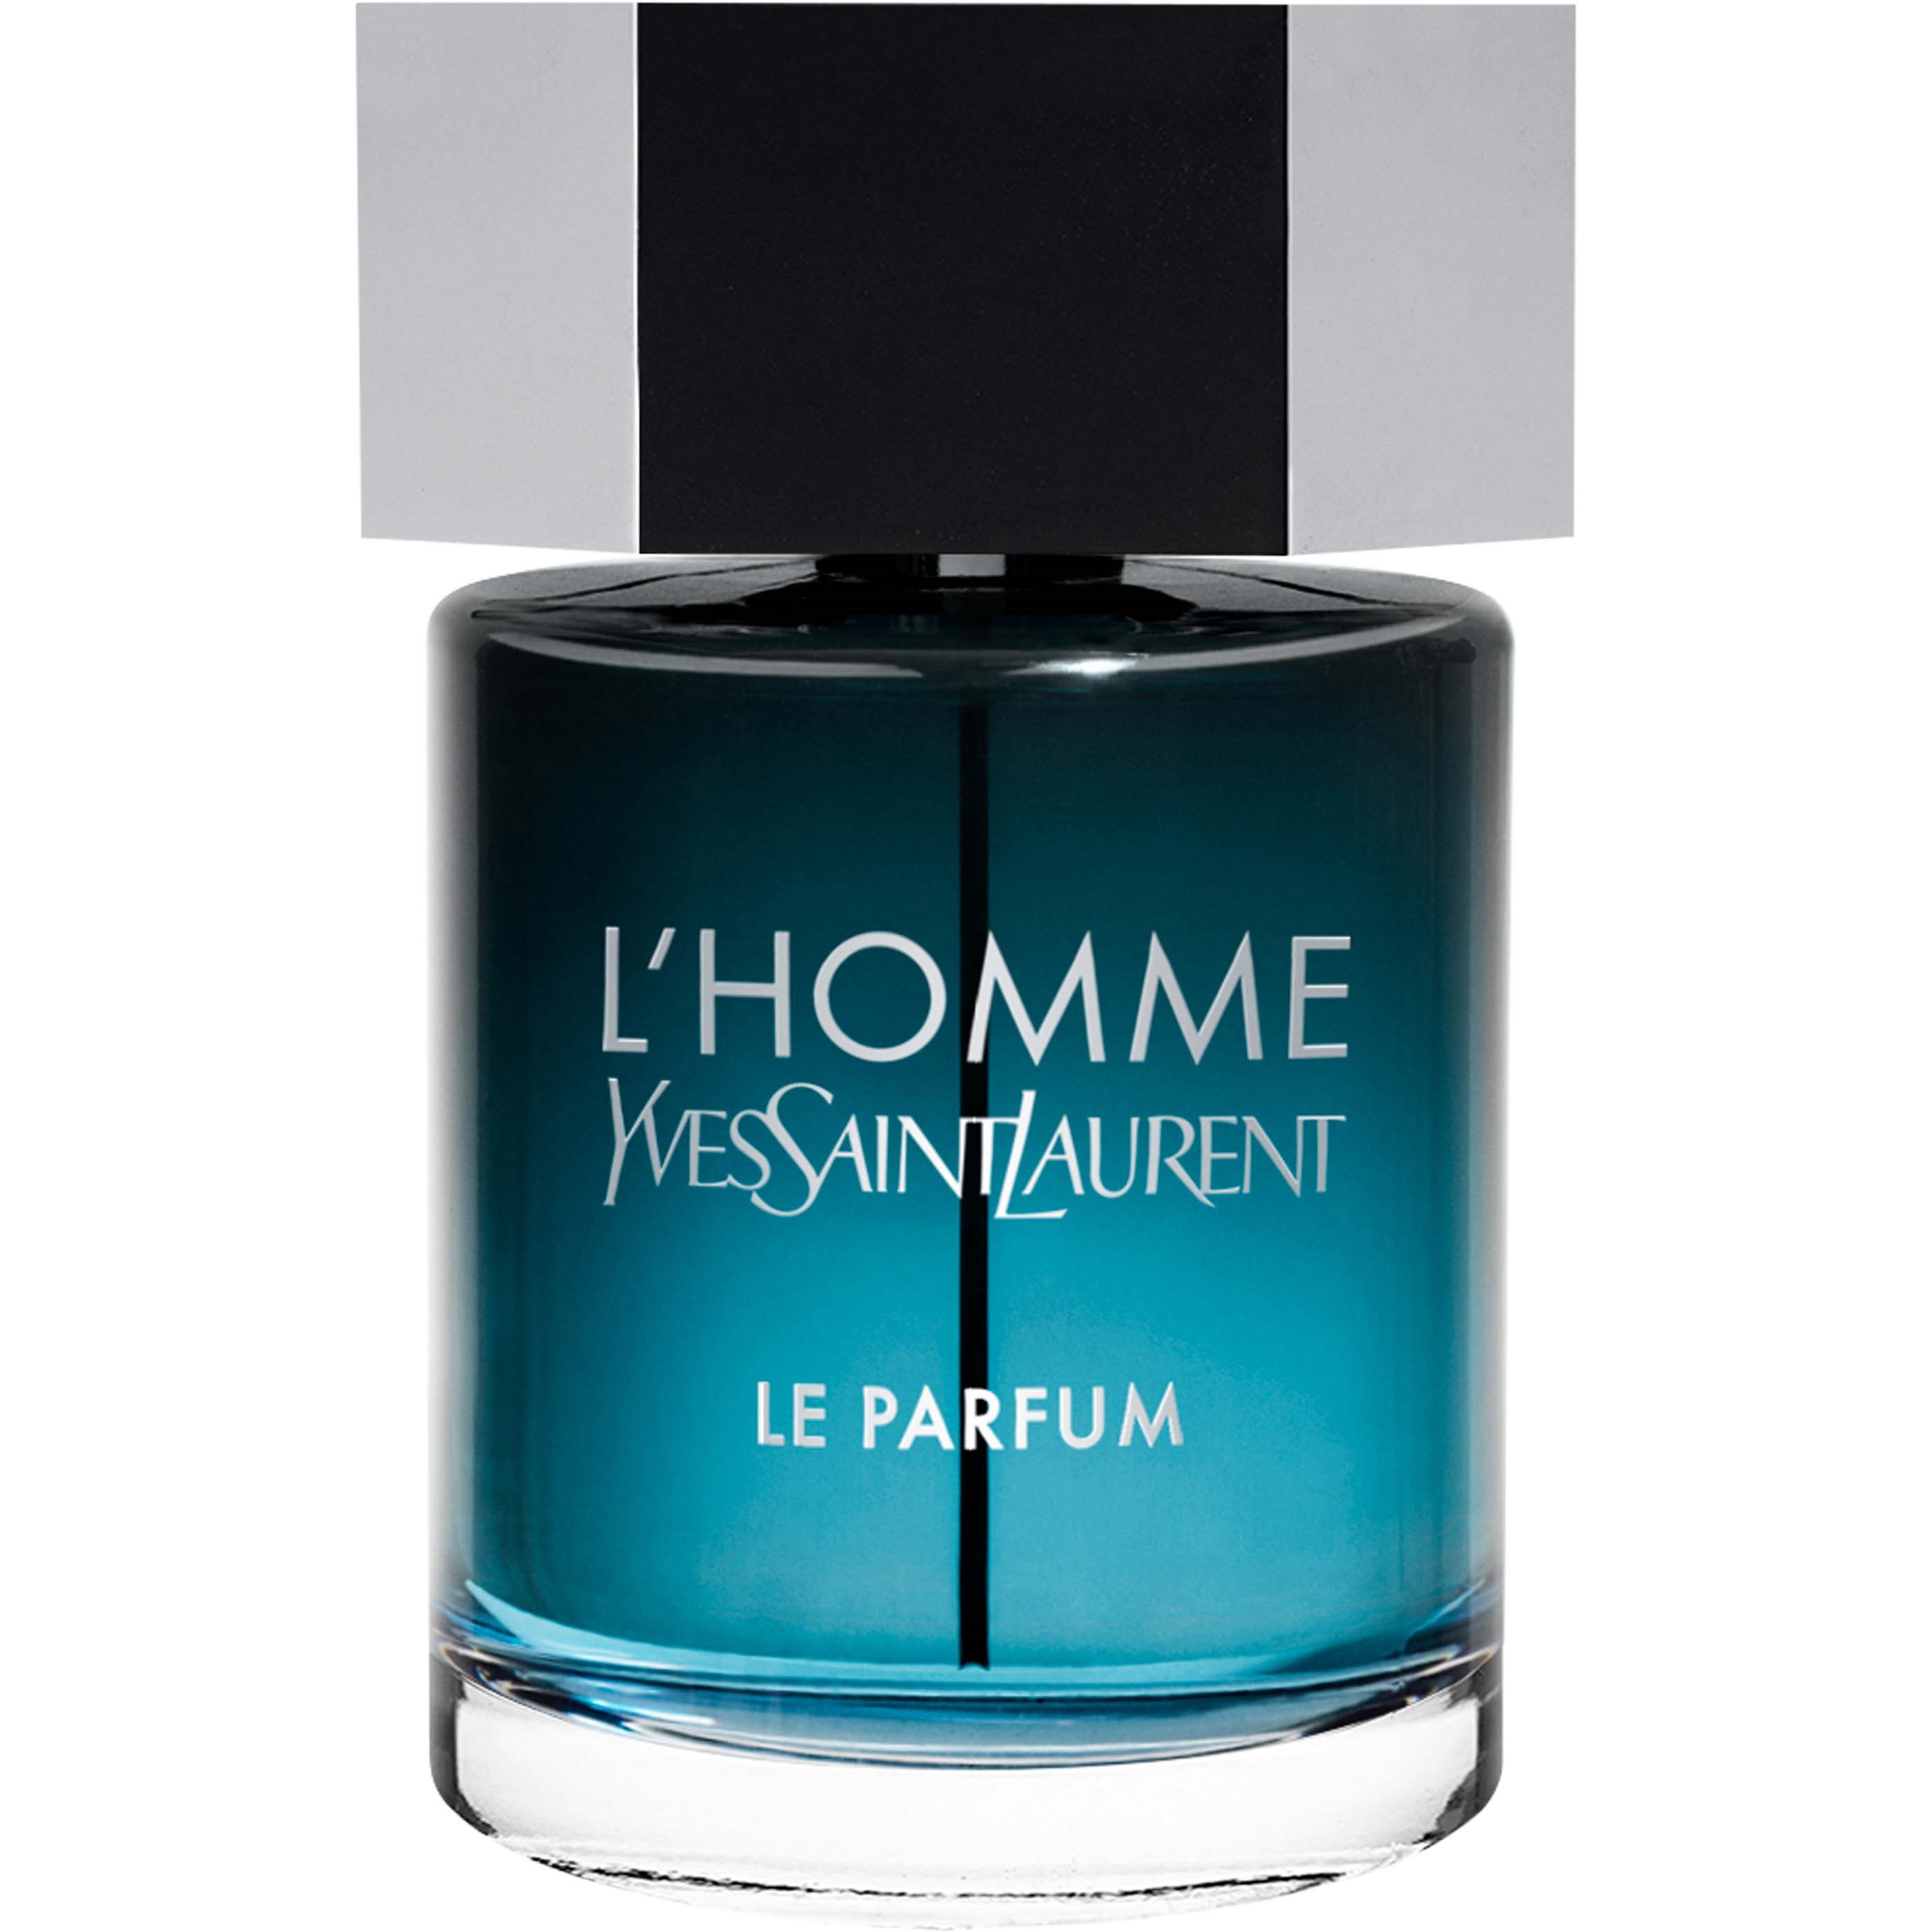 Yves Saint Laurent L’Homme Le Parfum 100 ml